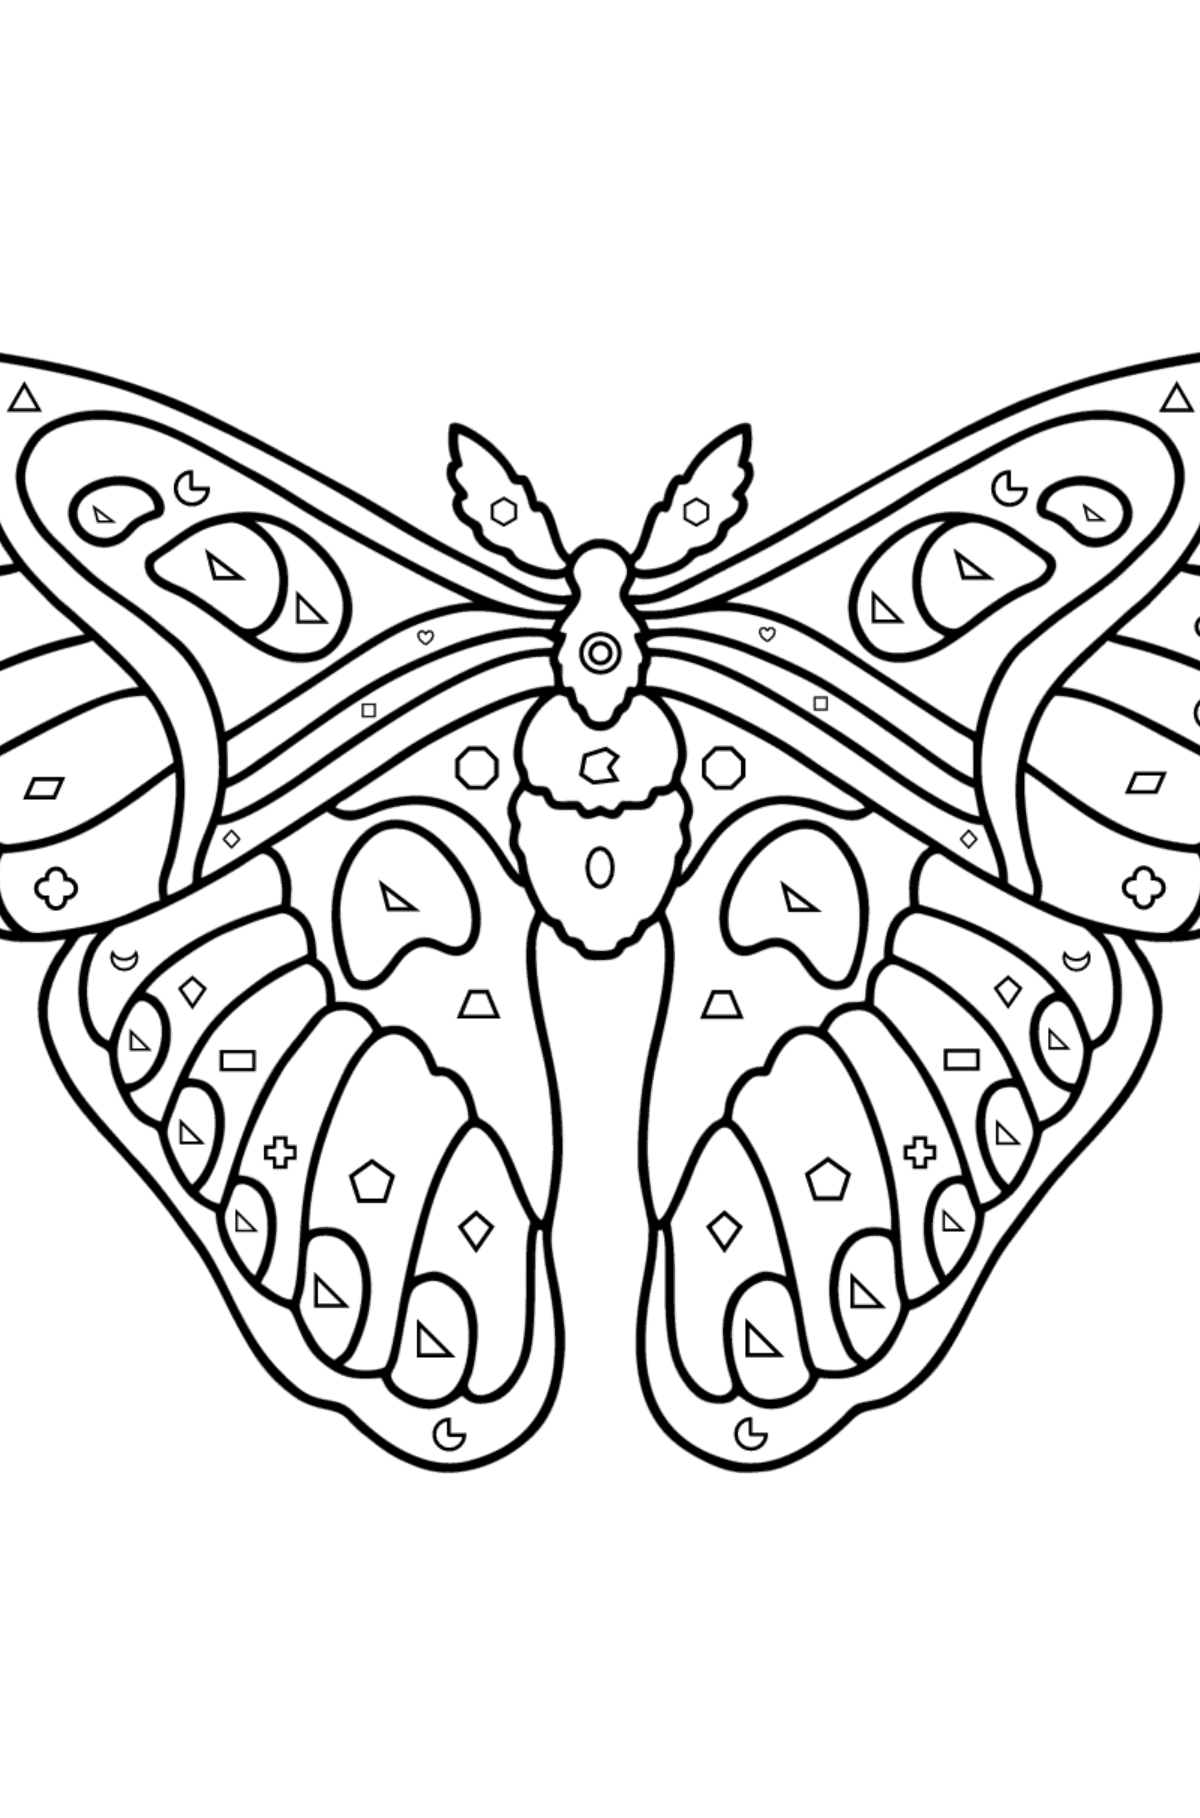 Раскраска Атласная Бабочка Павлиноглазка Атлас - Картинка высокого качества для Детей